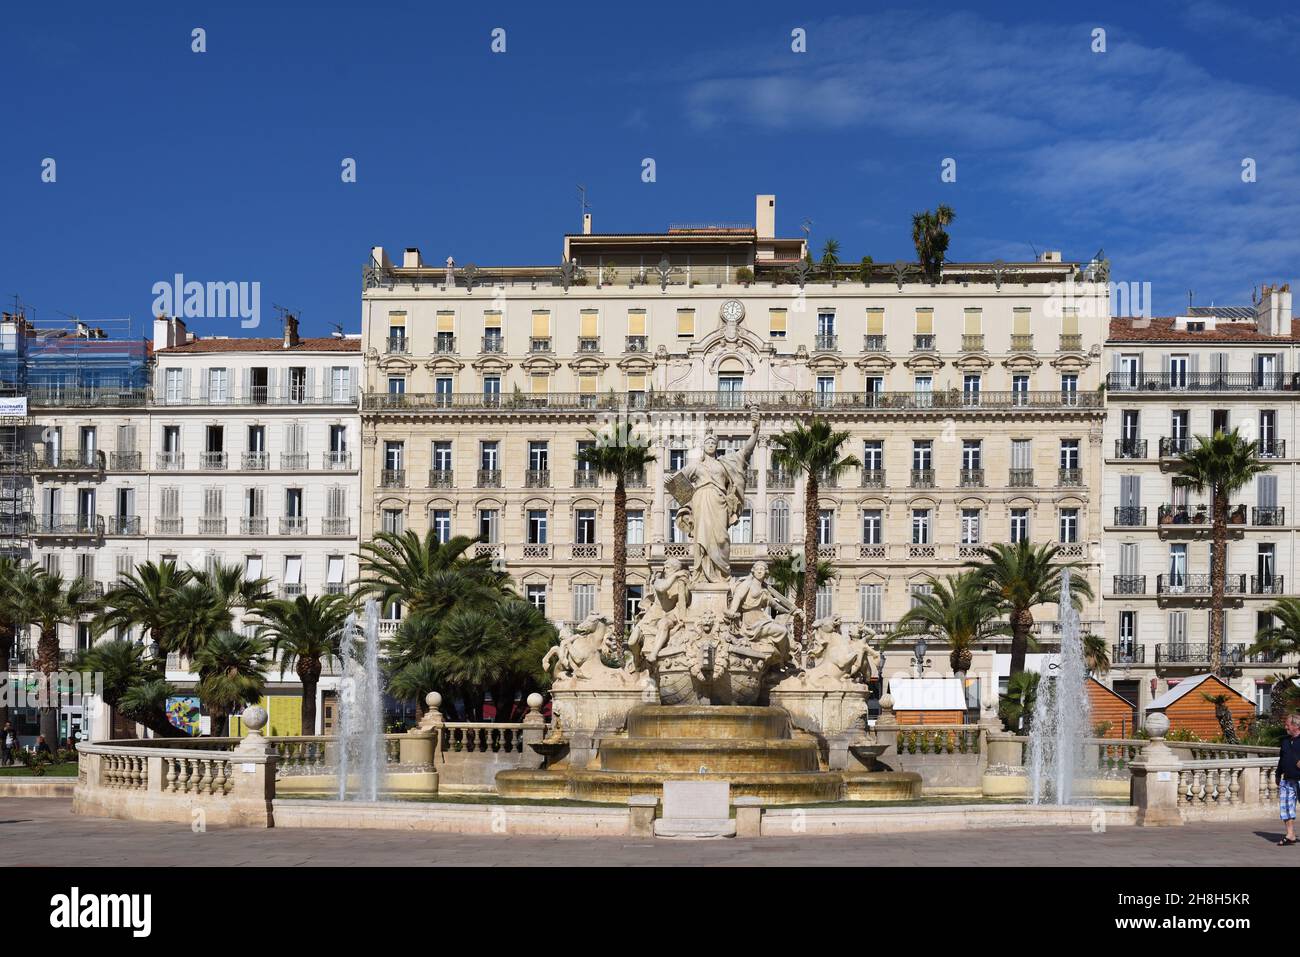 Grand Hotel (1870) & Fountain or Fontaine de la Fédération (1890) Place de la Liberté Town Square or Plaza Toulon Var Provence France Stock Photo